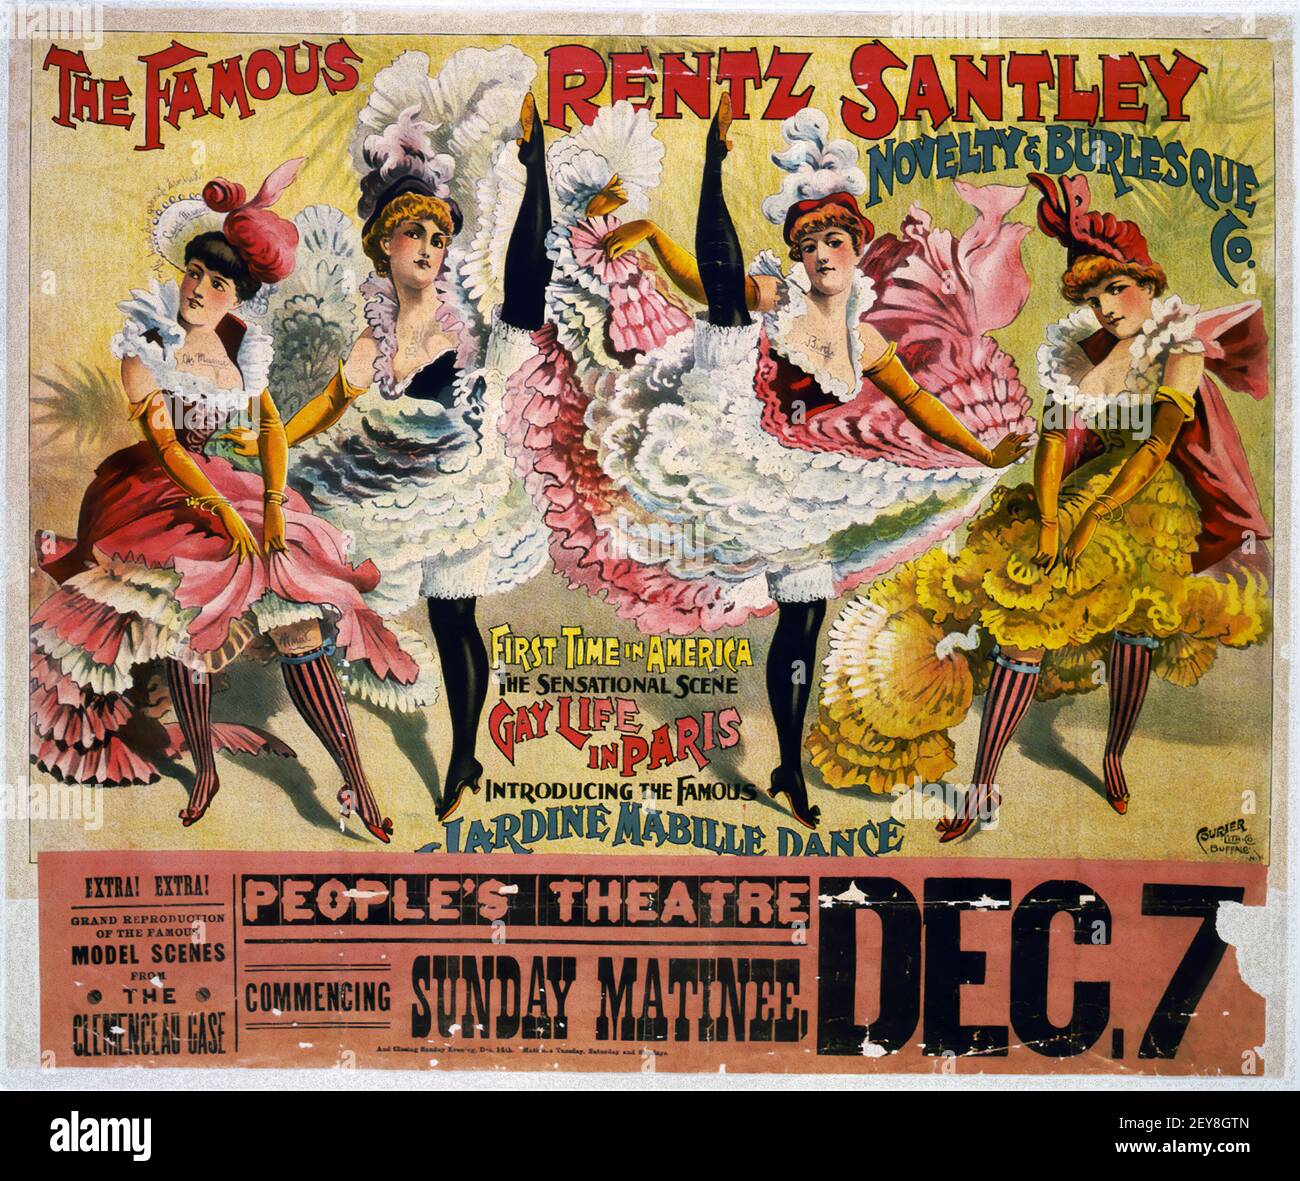 Die berühmte Rentz Santley Novelty & Burlesque Co. Klassisches Burlesque Poster, alt und sehr vintage Stil Stockfoto